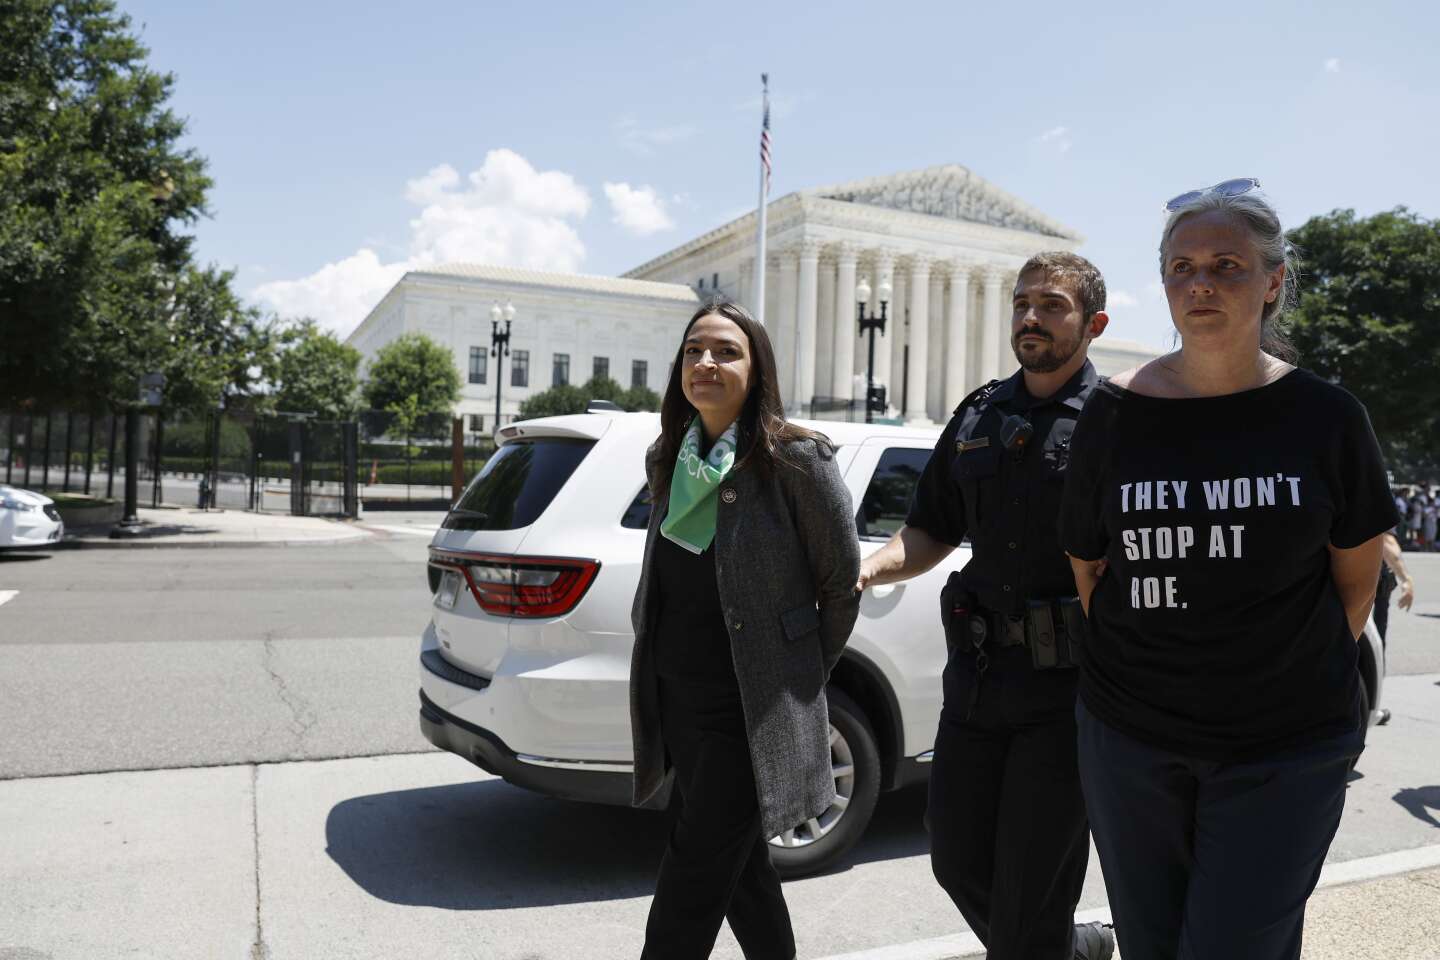 Alexandria Ocasio-Cortez wurde zusammen mit anderen Gesetzgebern während einer Protestaktion gegen das Recht auf Abtreibung in Washington festgenommen.